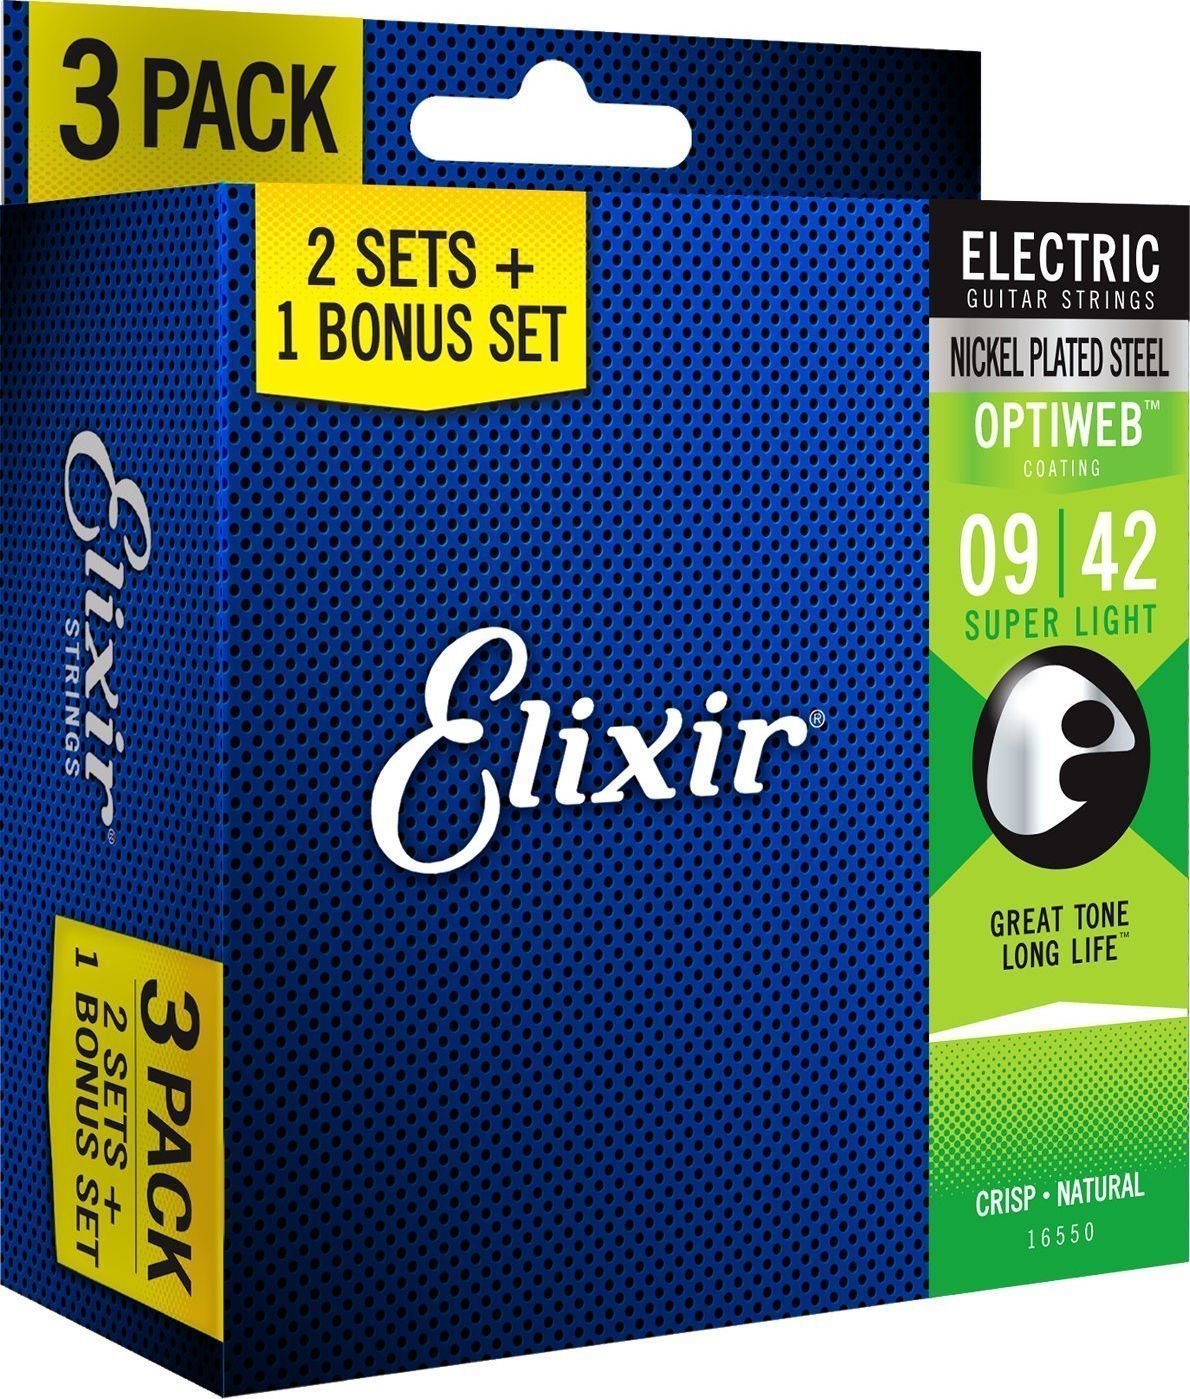 E-gitarrsträngar Elixir 16550 OPTIWEB Coating Super Light 9-42 3-PACK